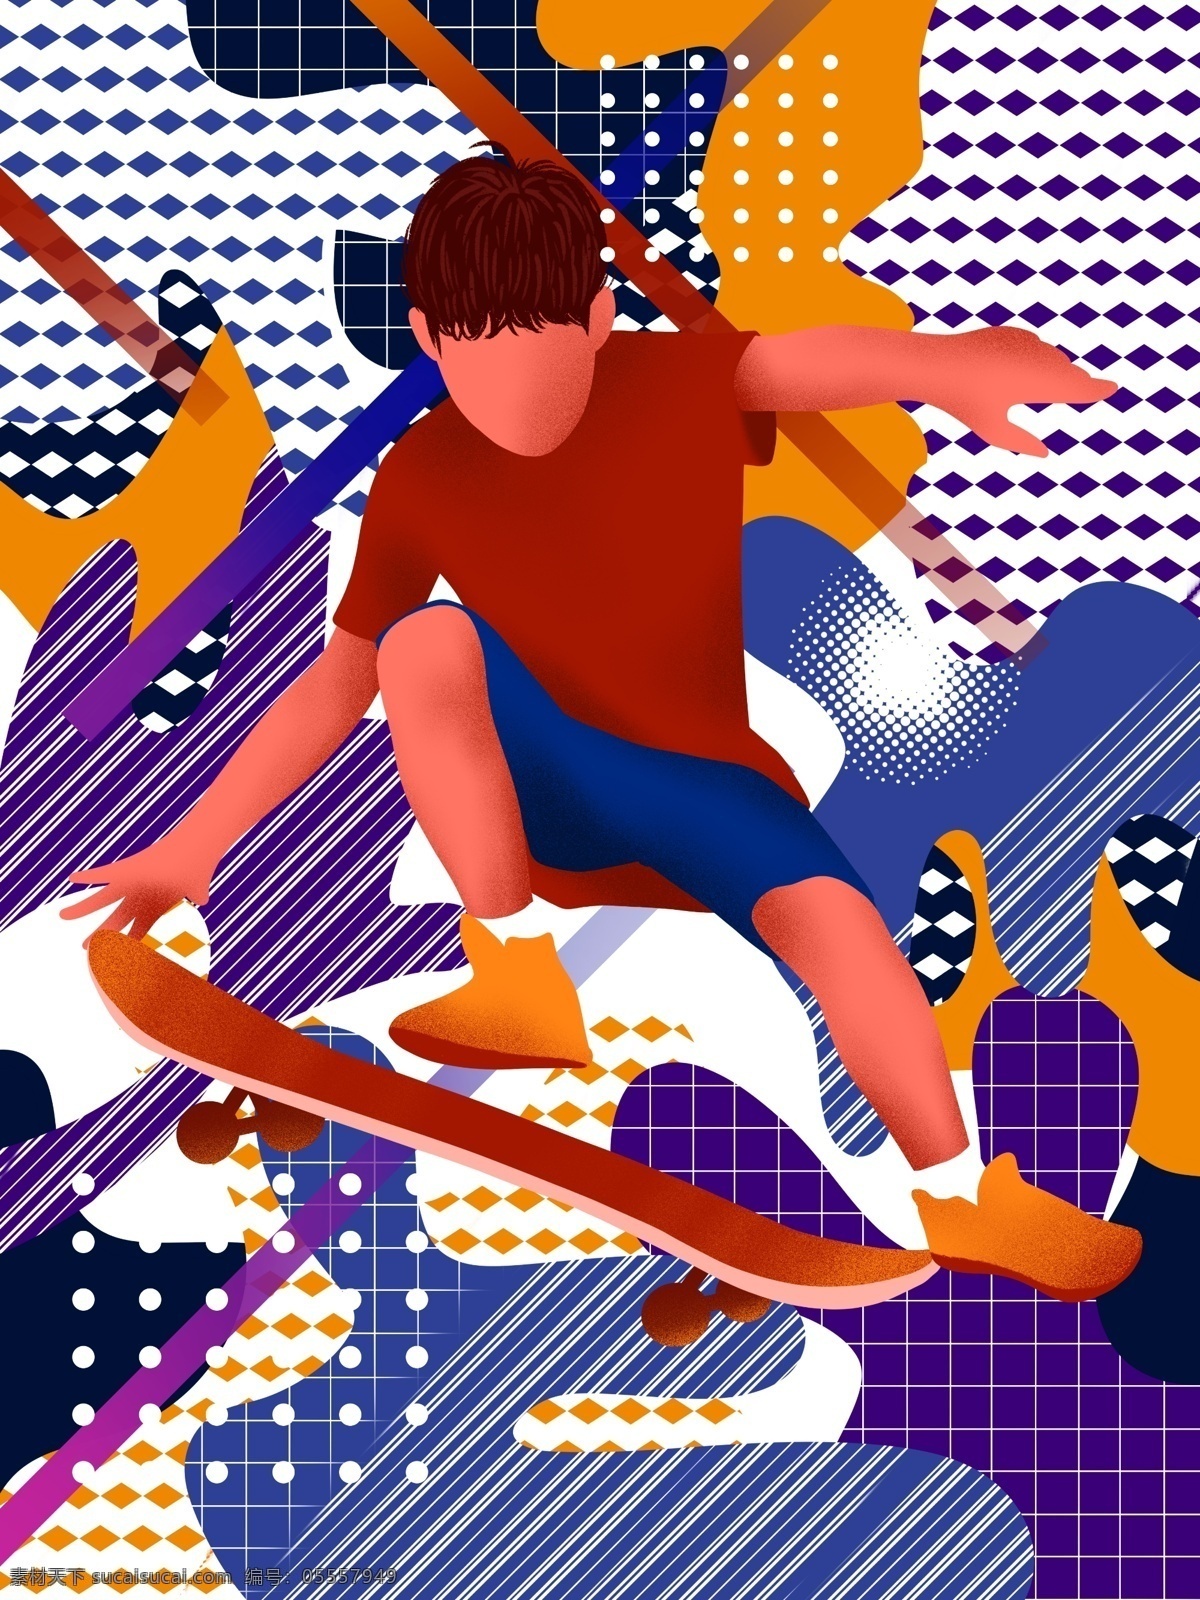 游走 梦 玩 滑板 男孩 撞 色 插画 抽象 色块 运动 健身 绚丽 游走的梦 玩滑板 男生 男人 孩童 儿童 撞色 活动 健康运动 滑板车 酷炫 形象 帅气 飞跃 跳起